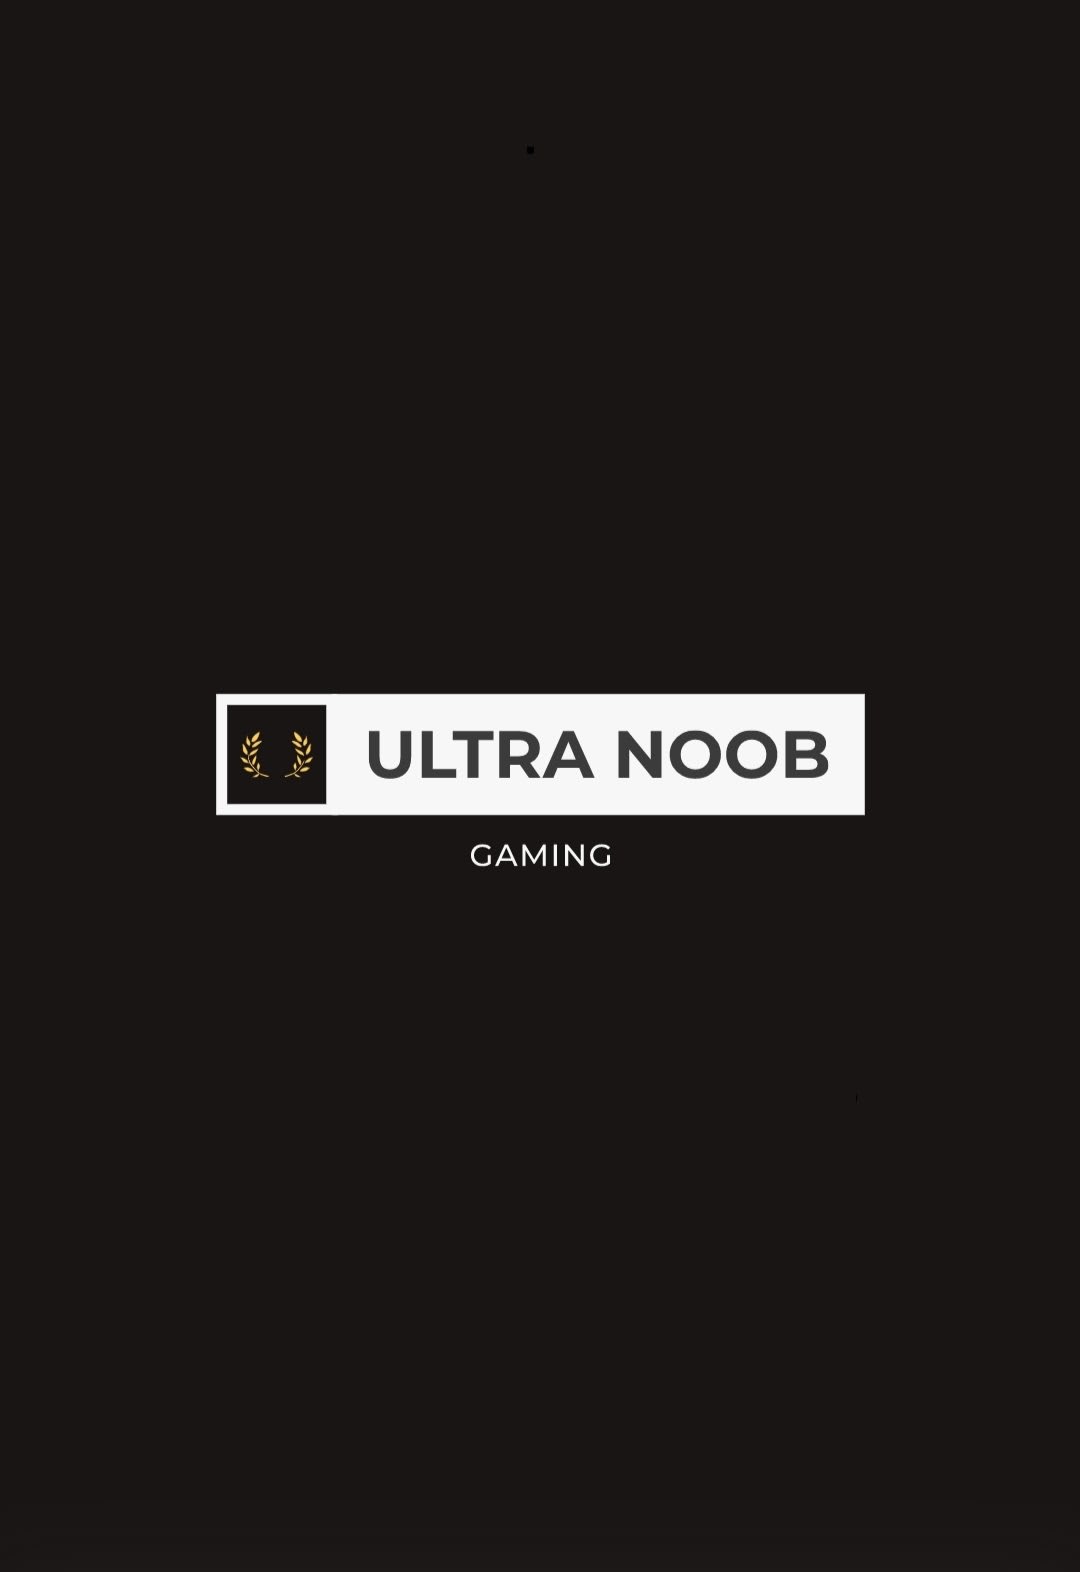 Ultra Noob Gaming